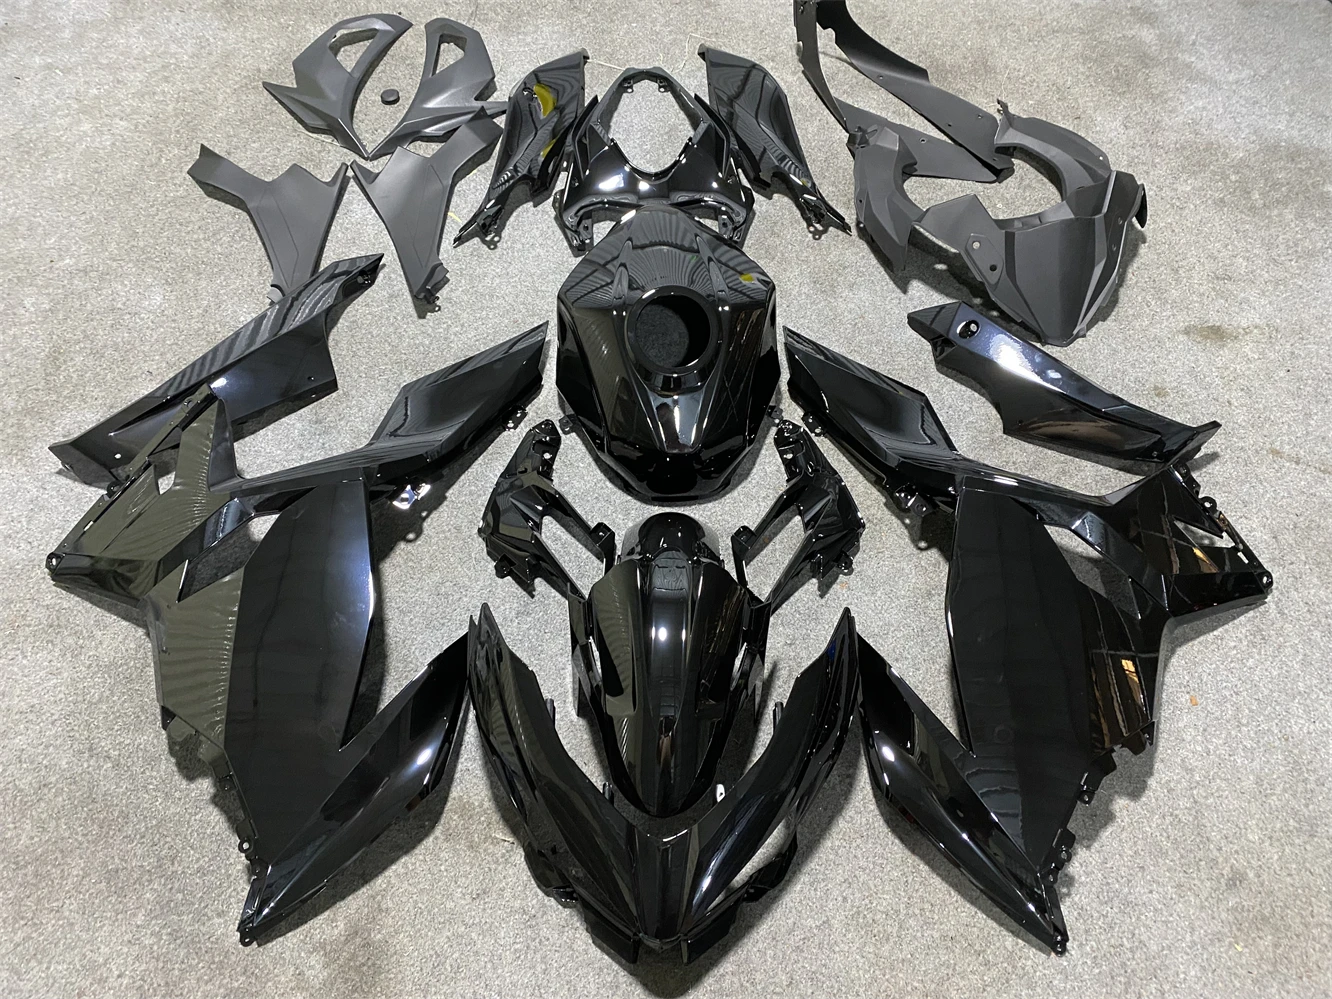 

Комплект обтекателей для мотоцикла ниндзя 400 18 19 2021 22 23 года EX400 ZX400 2018 2019 2020 2021 2022 2023 обтекатель ярко-черный